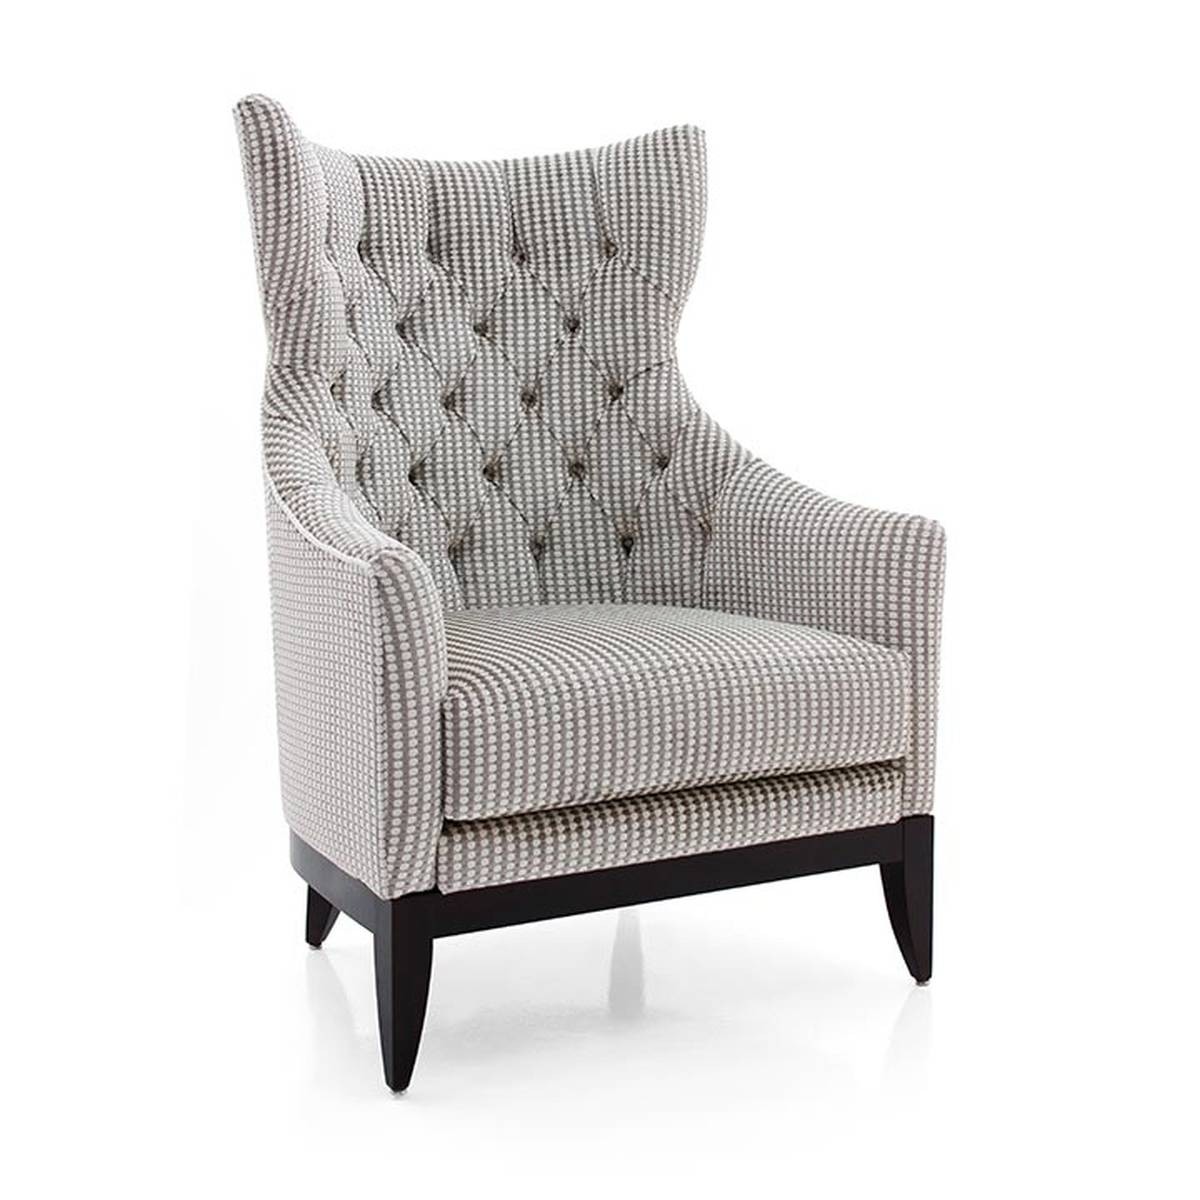 Каминное кресло Queen armchair из Италии фабрики SEVEN SEDIE